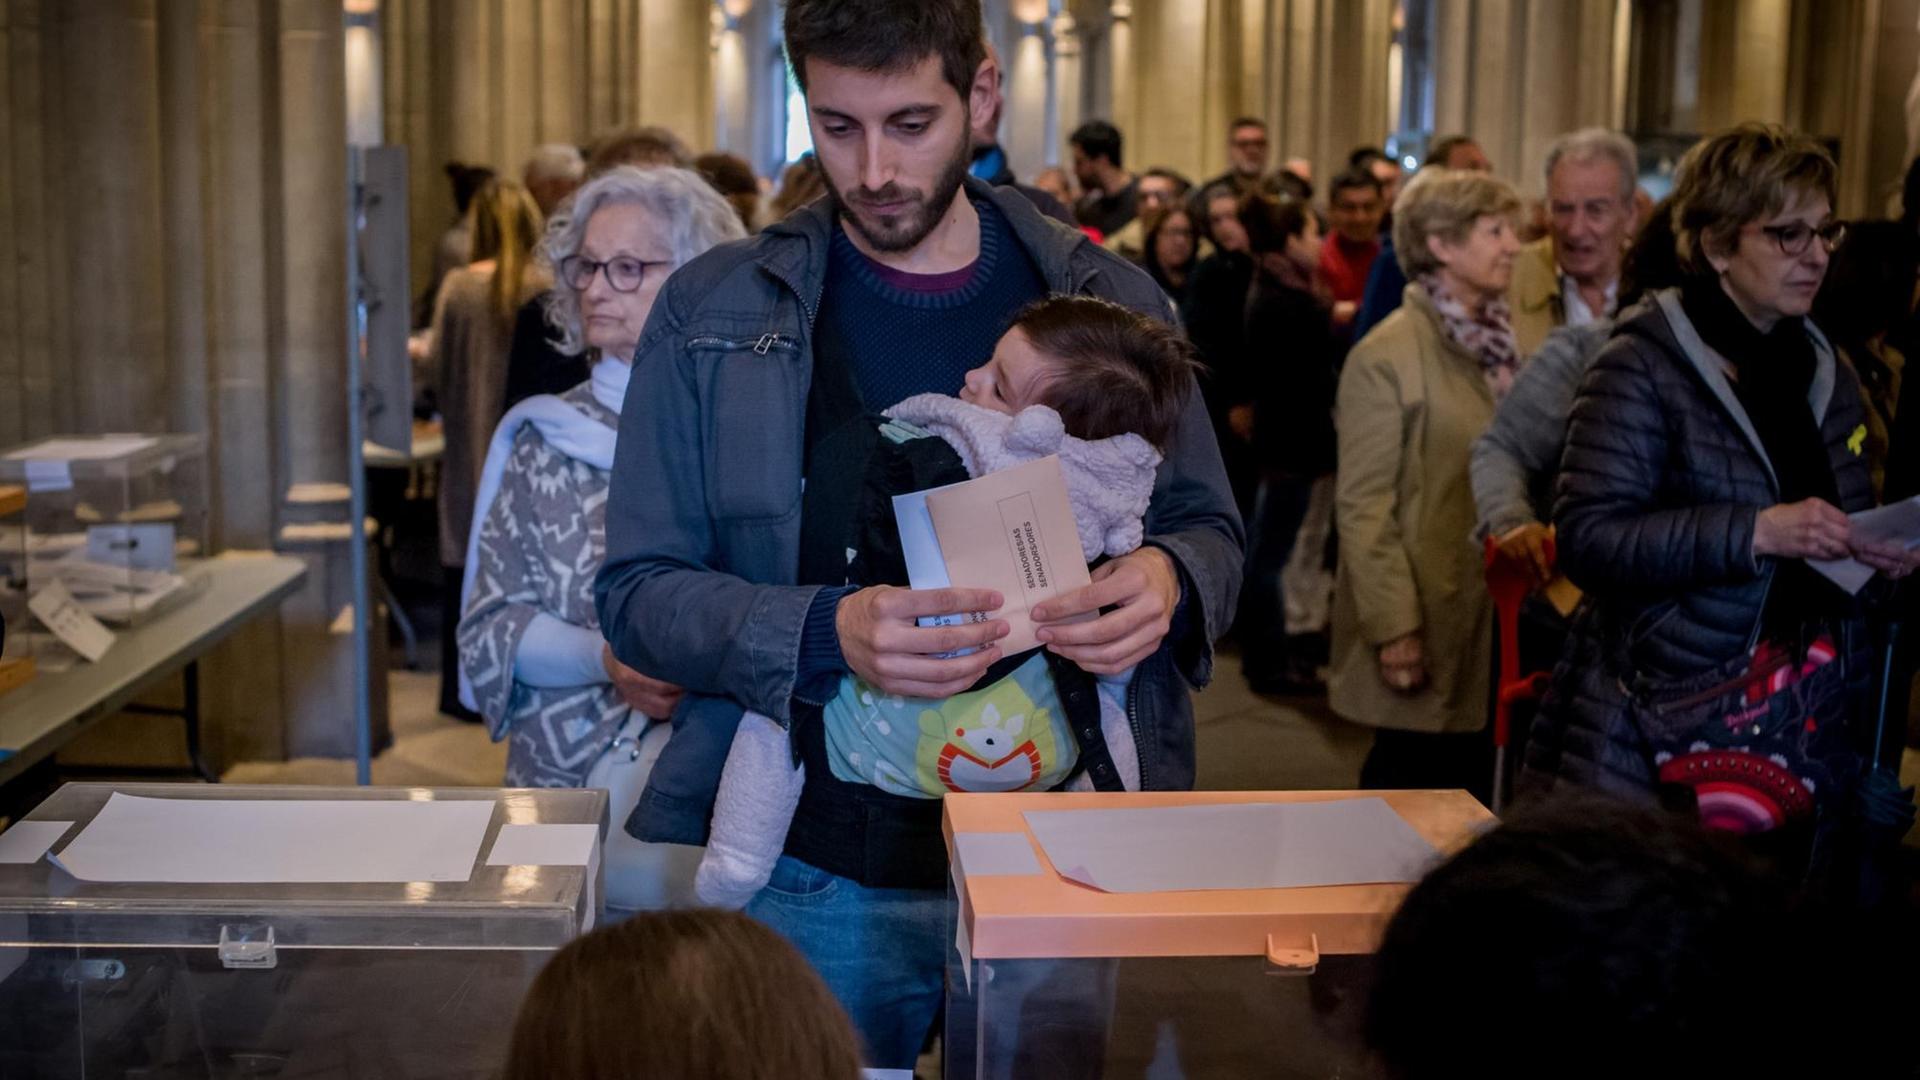 Ein spanischer Wähler mit Baby im Arm an einer Wahlurne.